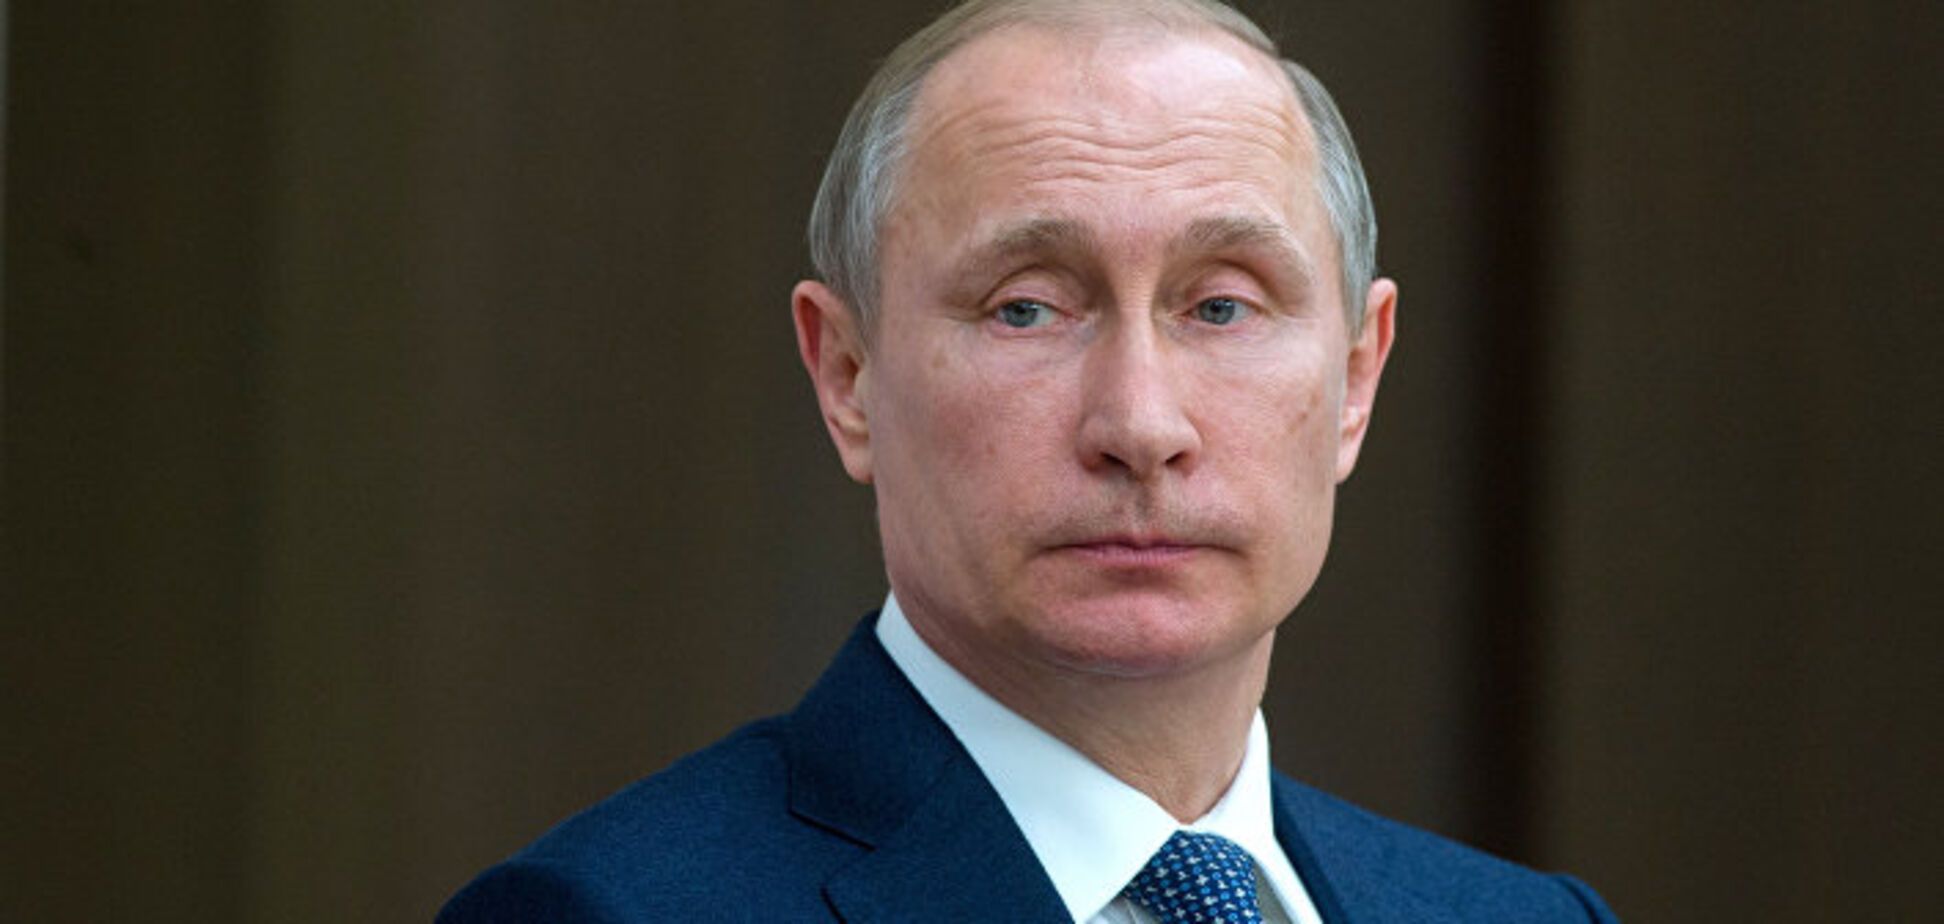 Путин нынче действует, как и подобает питерскому гопнику